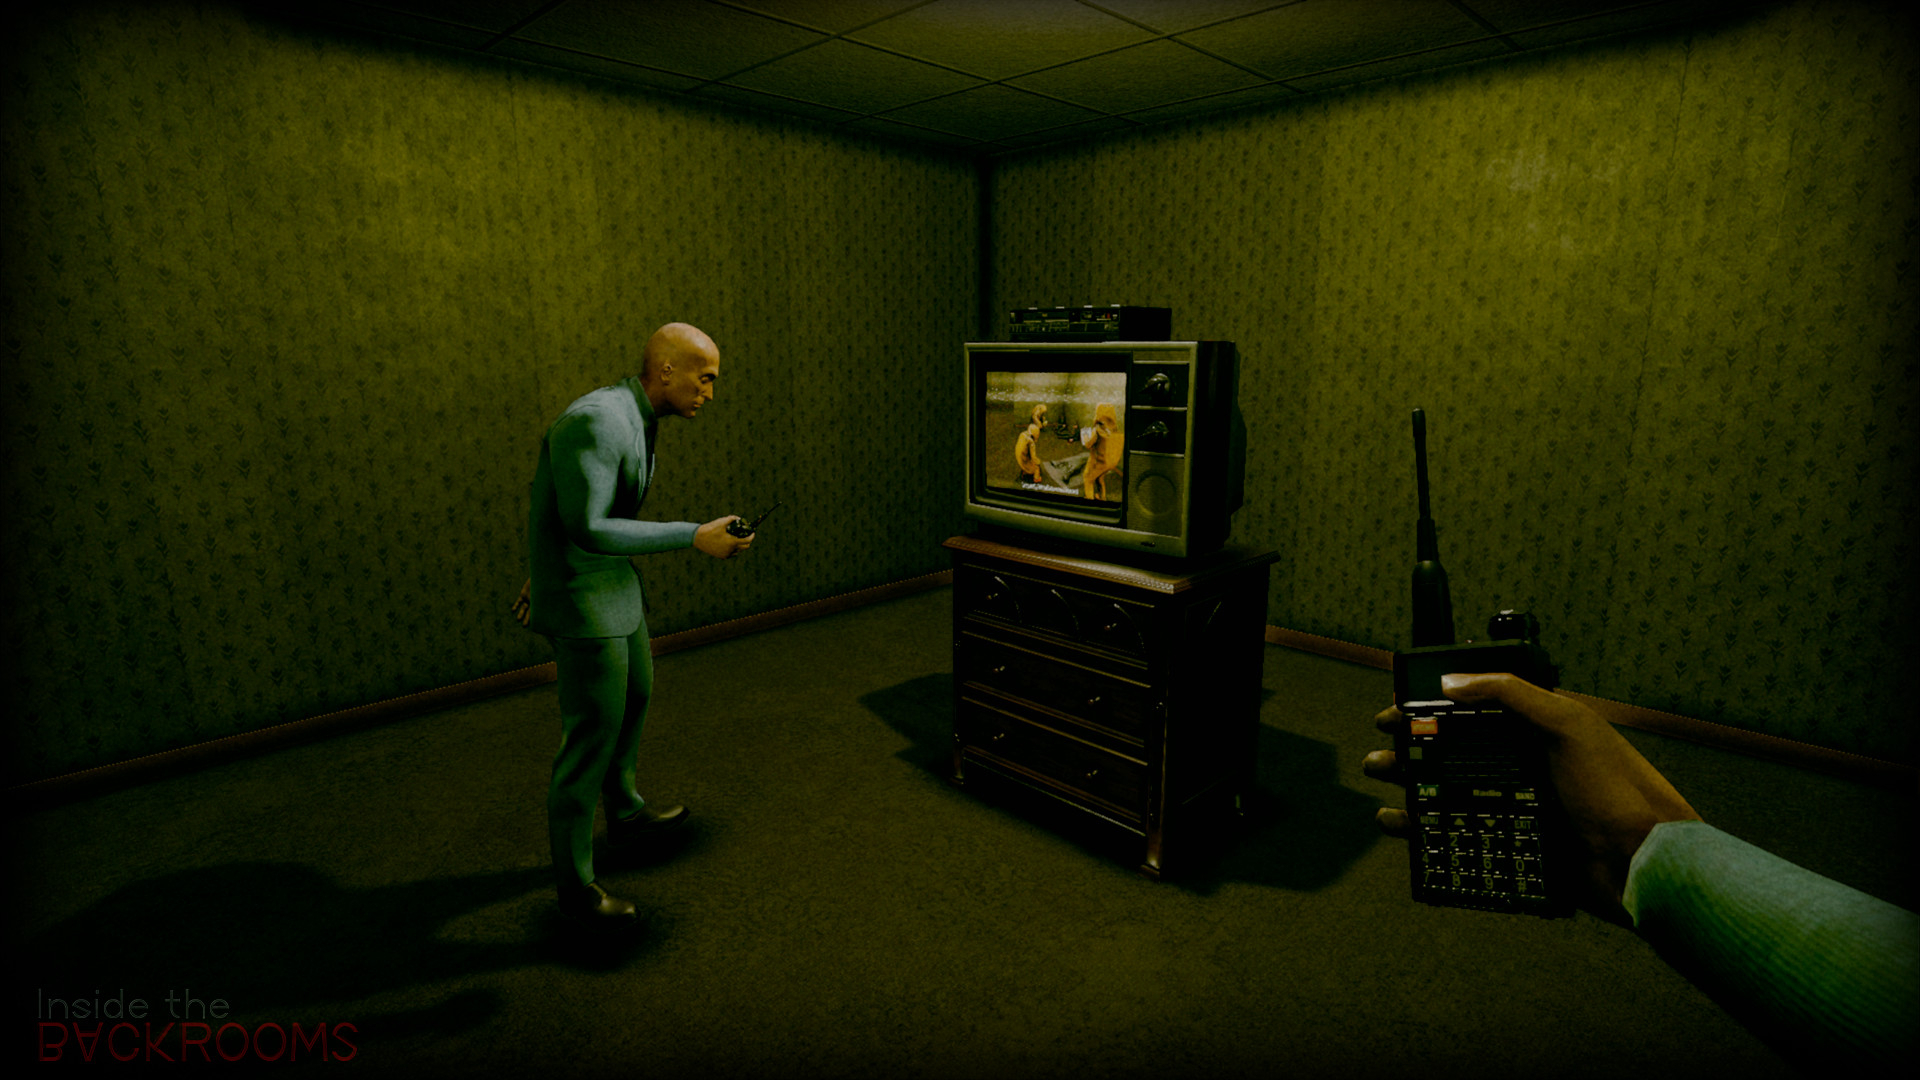 Скриншот из игры Inside the Backrooms под номером 7